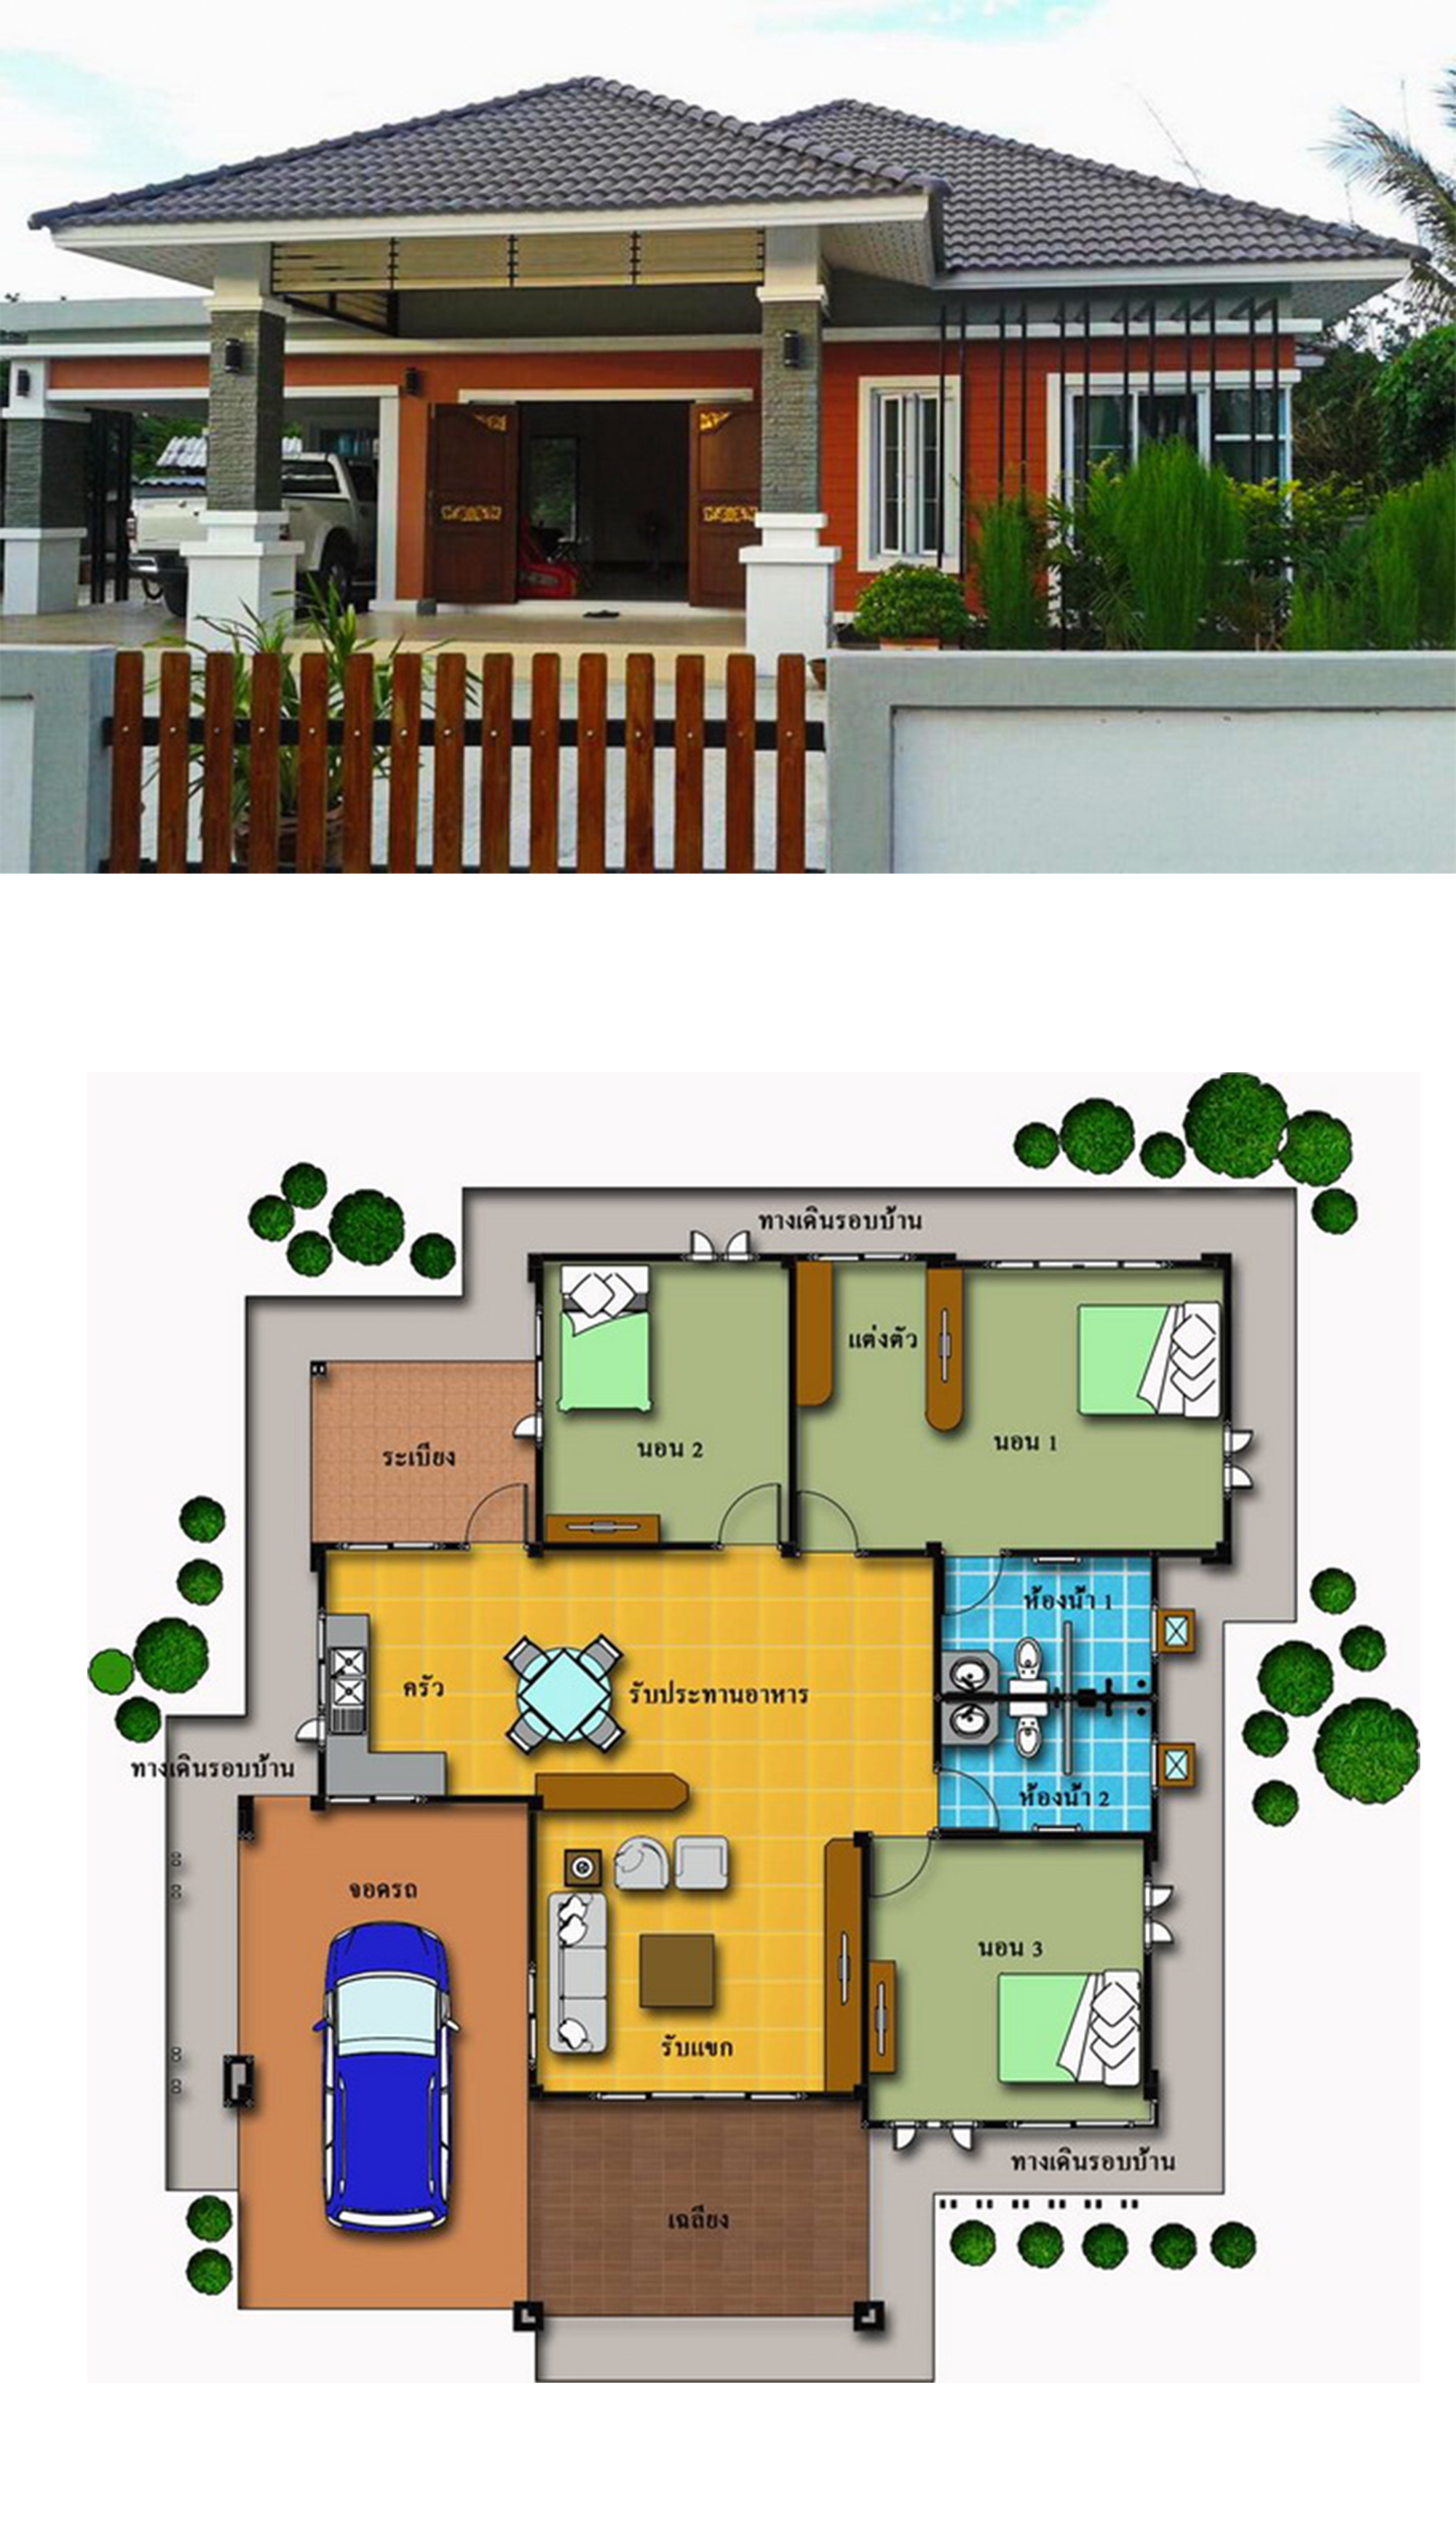 3 Bedrooms House Design Plan 15X20M - House Plans 3D